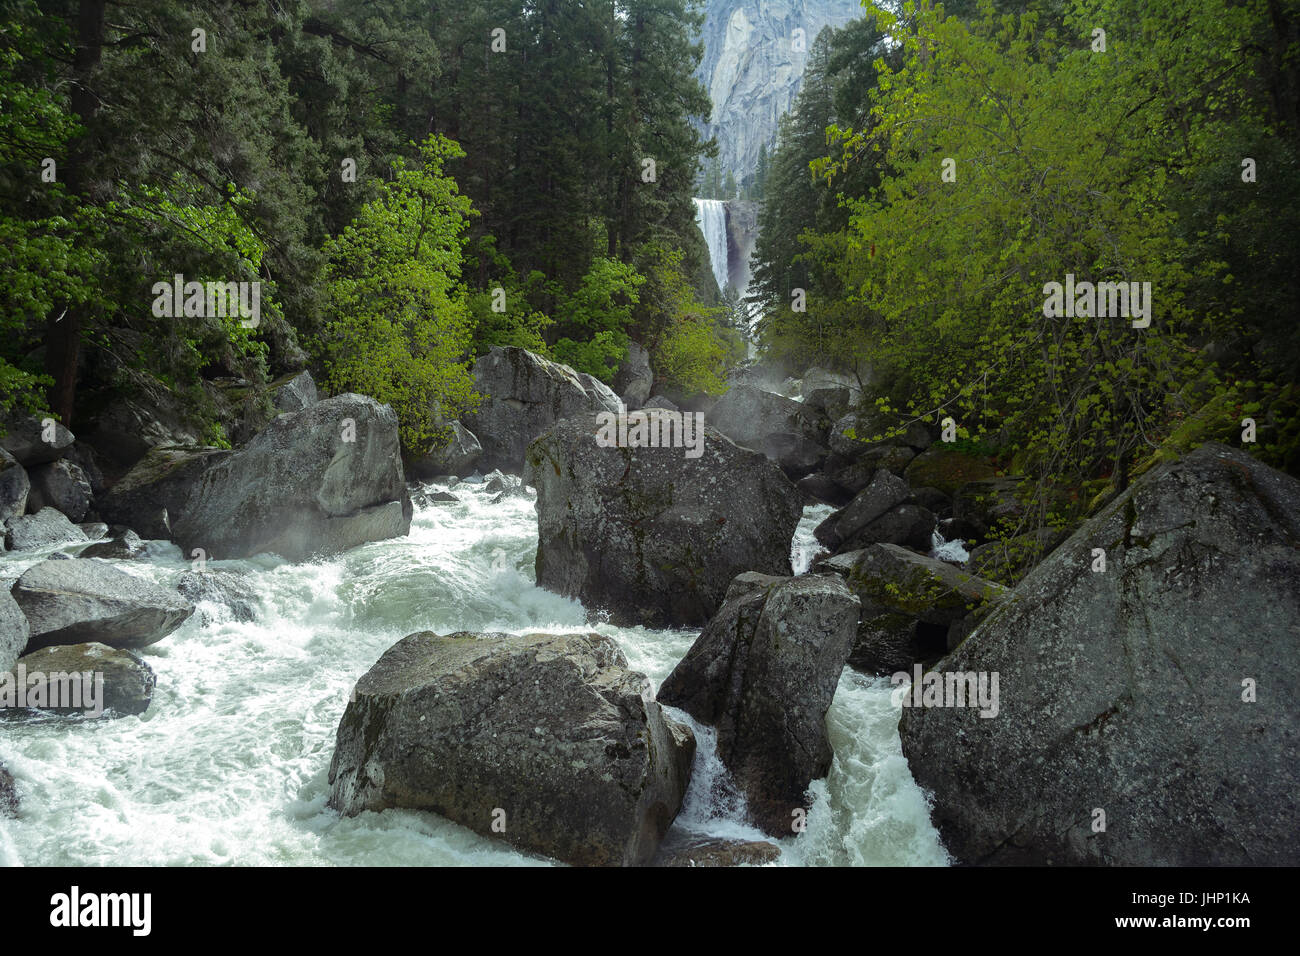 Rauschenden Fluss und Wald mit Vernal Falls im Hintergrund im Yosemite National Park - Fotografie von Paul Toillion Stockfoto